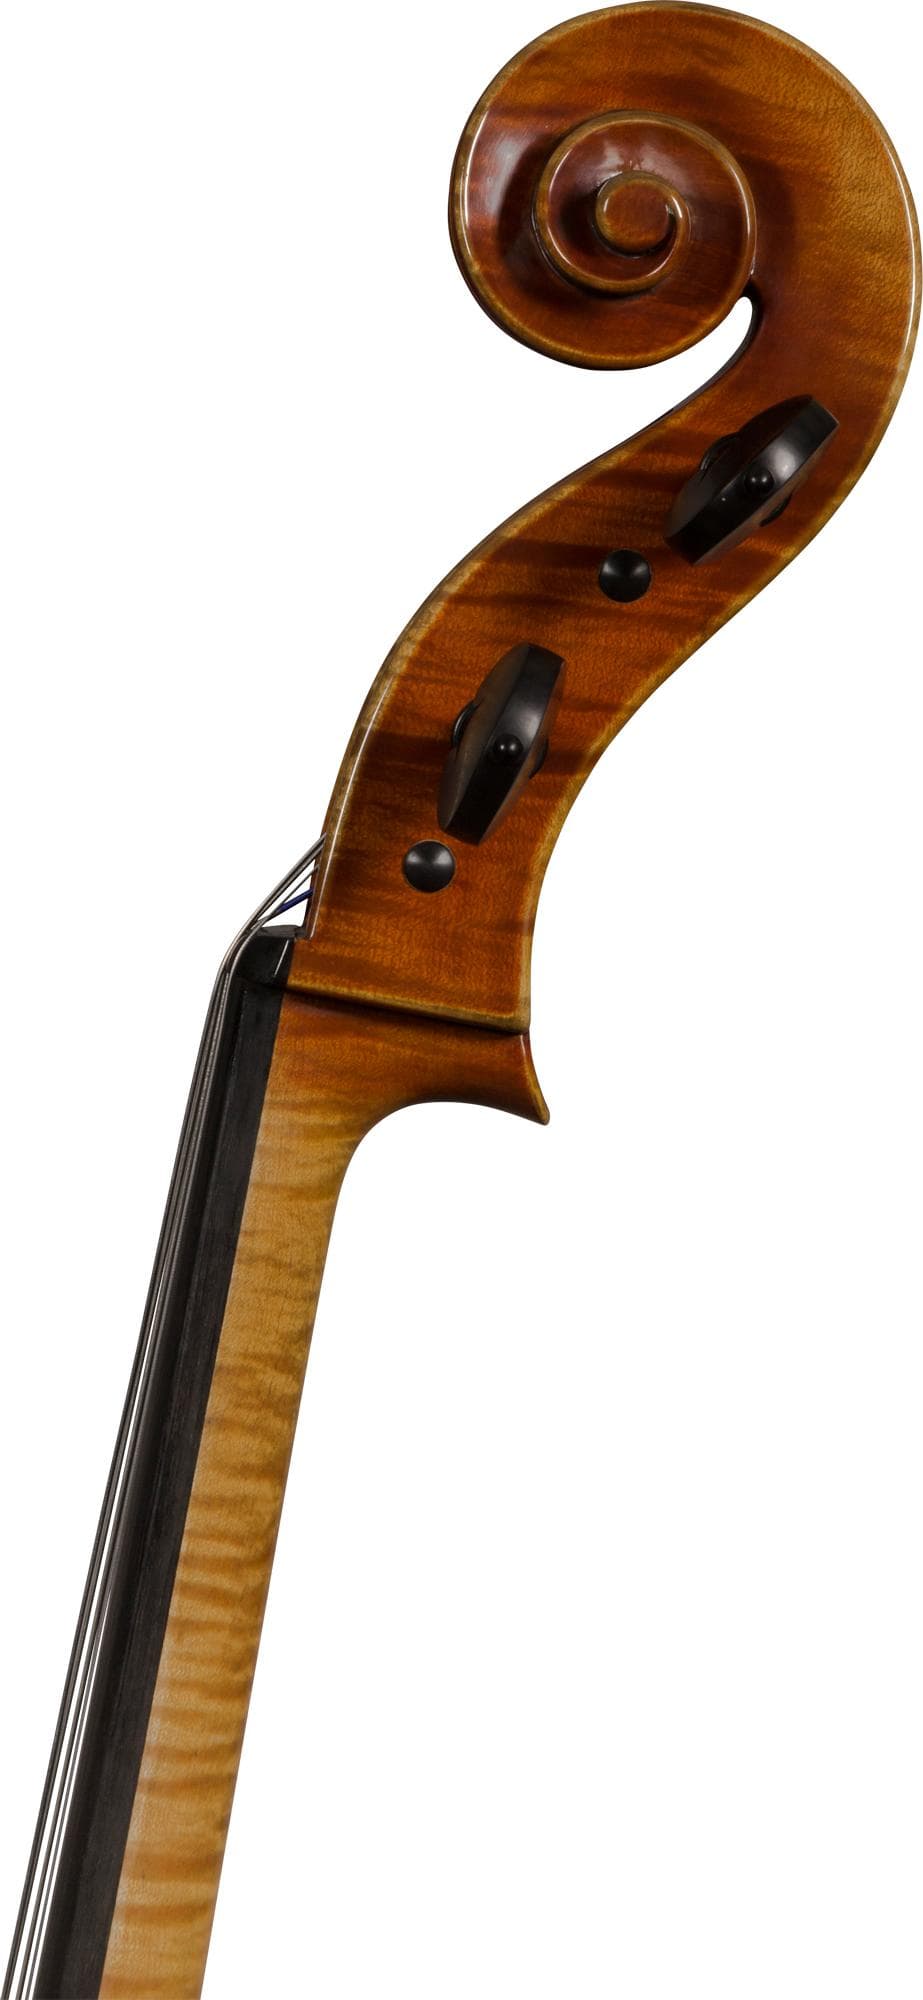 Giorgio Grisales "Garimberti" Cello, Cremona, 2017